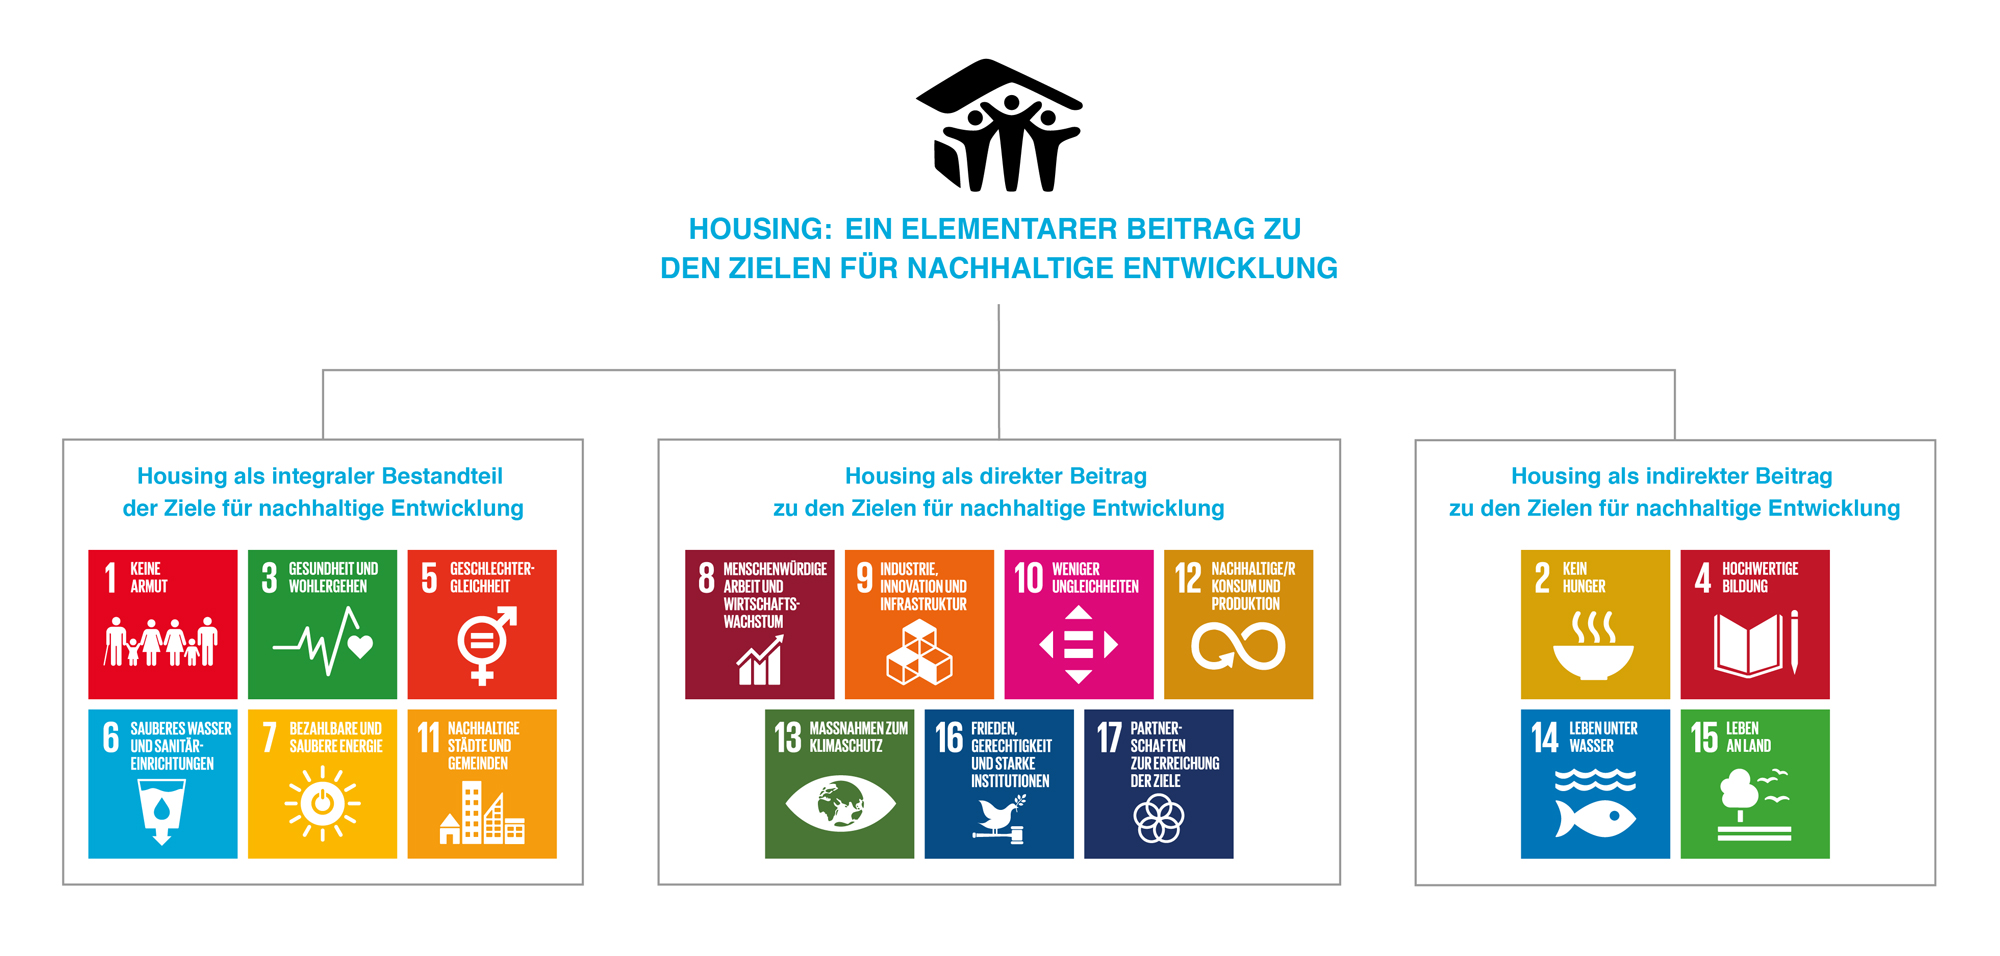 Grafik zu Housing als elementarer Beitrag zu den Zielen für nachhaltige Entwicklung, aufgeteilt in 3 Kästen: Housing als integraler Bestandteil, Housing als direkter Beitrag, Housing als indirekter Beitrag zu den Zielen für nachhaltige Entwicklung. Im ersten Kasten sind die Sustainable Development Goal (SDG) Icons 1 (Keine Armut), 3 (Gesundheit), 5 (Geschlechtergleichheit), 6 (Wasser, Hygiene), 7 (Saubere Energie) und 11 (Nachhaltige Städte und Gemeinden) gezeigt. Im zweiten Kasten sind die SDG-Icons 8 (Menschenwürdige Arbeit), 9 (Industrie, Innovation und Infrastruktur), 10 (weniger Ungleichheiten), 12 (Nachhaltiger Konsum und Produktion), 13 (Maßnahmen zum Klimaschutz), 16 (Frieden, Gerechtigkeit) und 17 (Partnerschaften) gezeigt. Im dritten Kasten werden die SDG-Icons 2 (Kein Hunger), 4 (Hochwertige Bildung), 14 (Leben unter Wasser) und 15 (Leben an Land) gezeigt